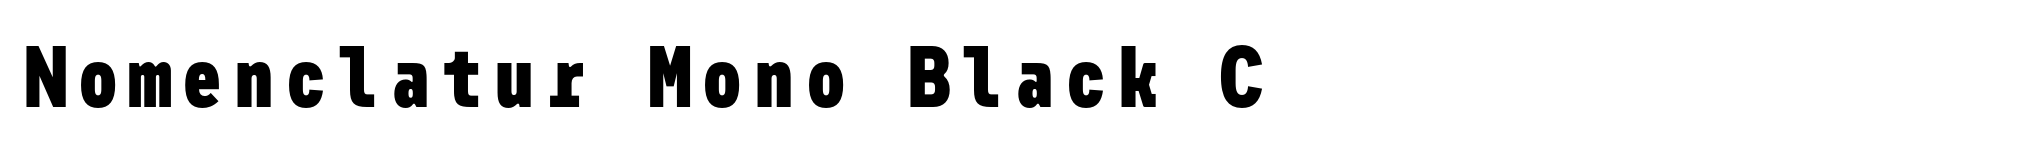 Nomenclatur Mono Black C image